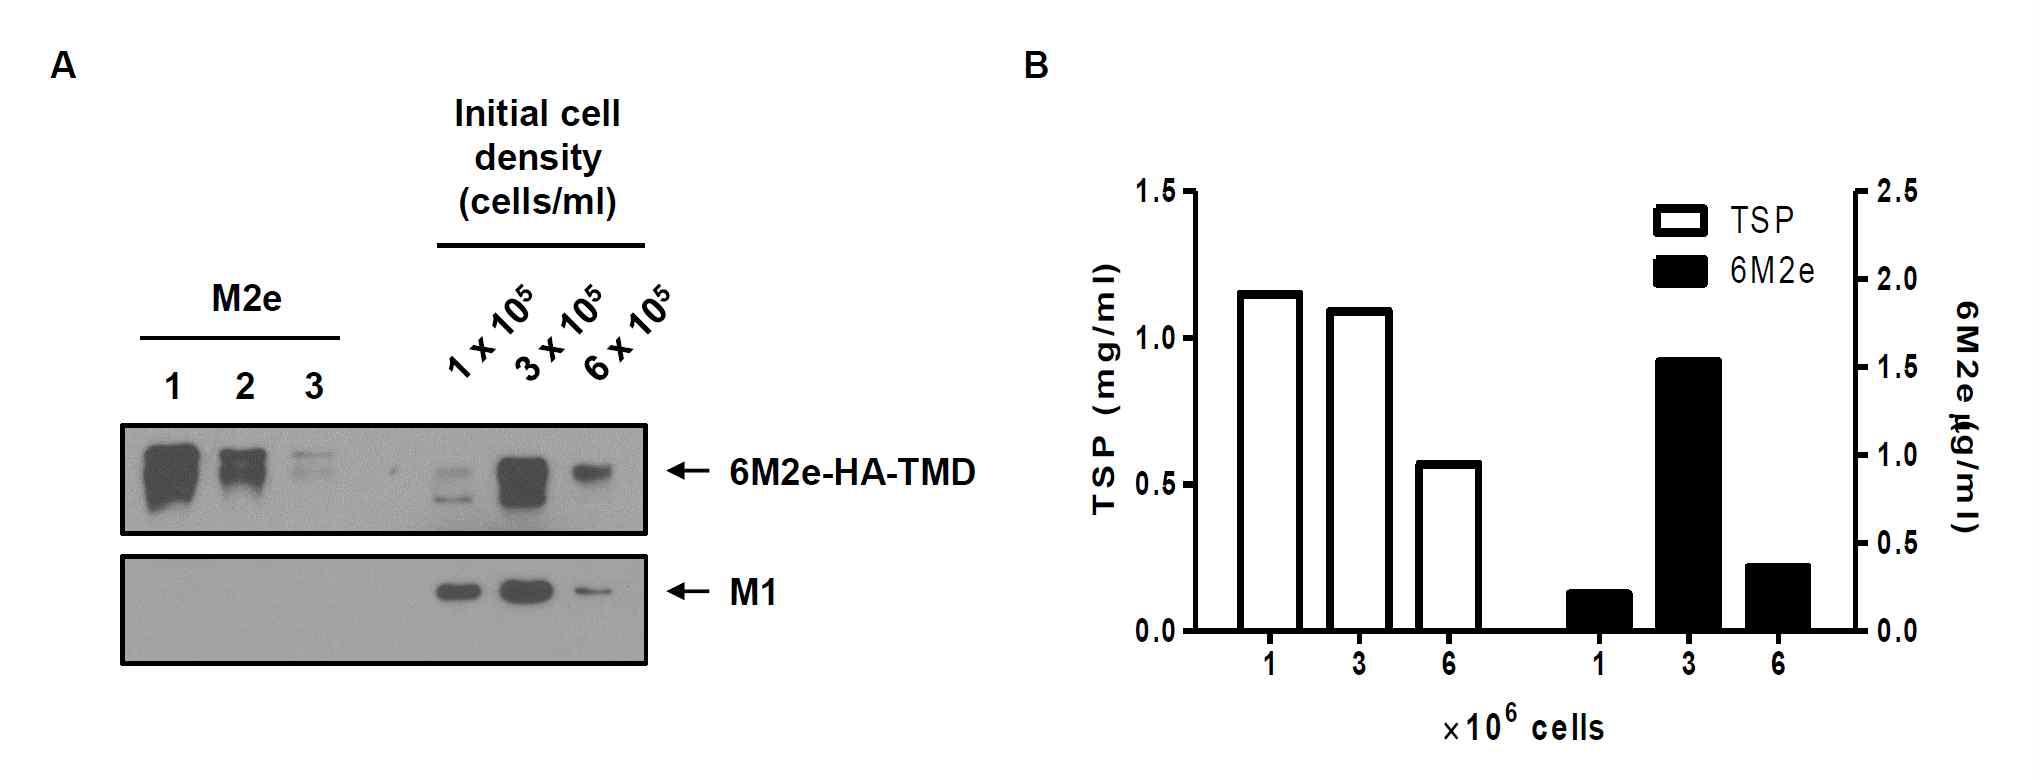 재조합 배큘로바이러스 (rBac/M1, rBac/6M2e-HA-TMD)가 감염된 TN-5B1-4 세포의 초기세포농도에 따른 범용백신용 VLP 생산을 비교함.